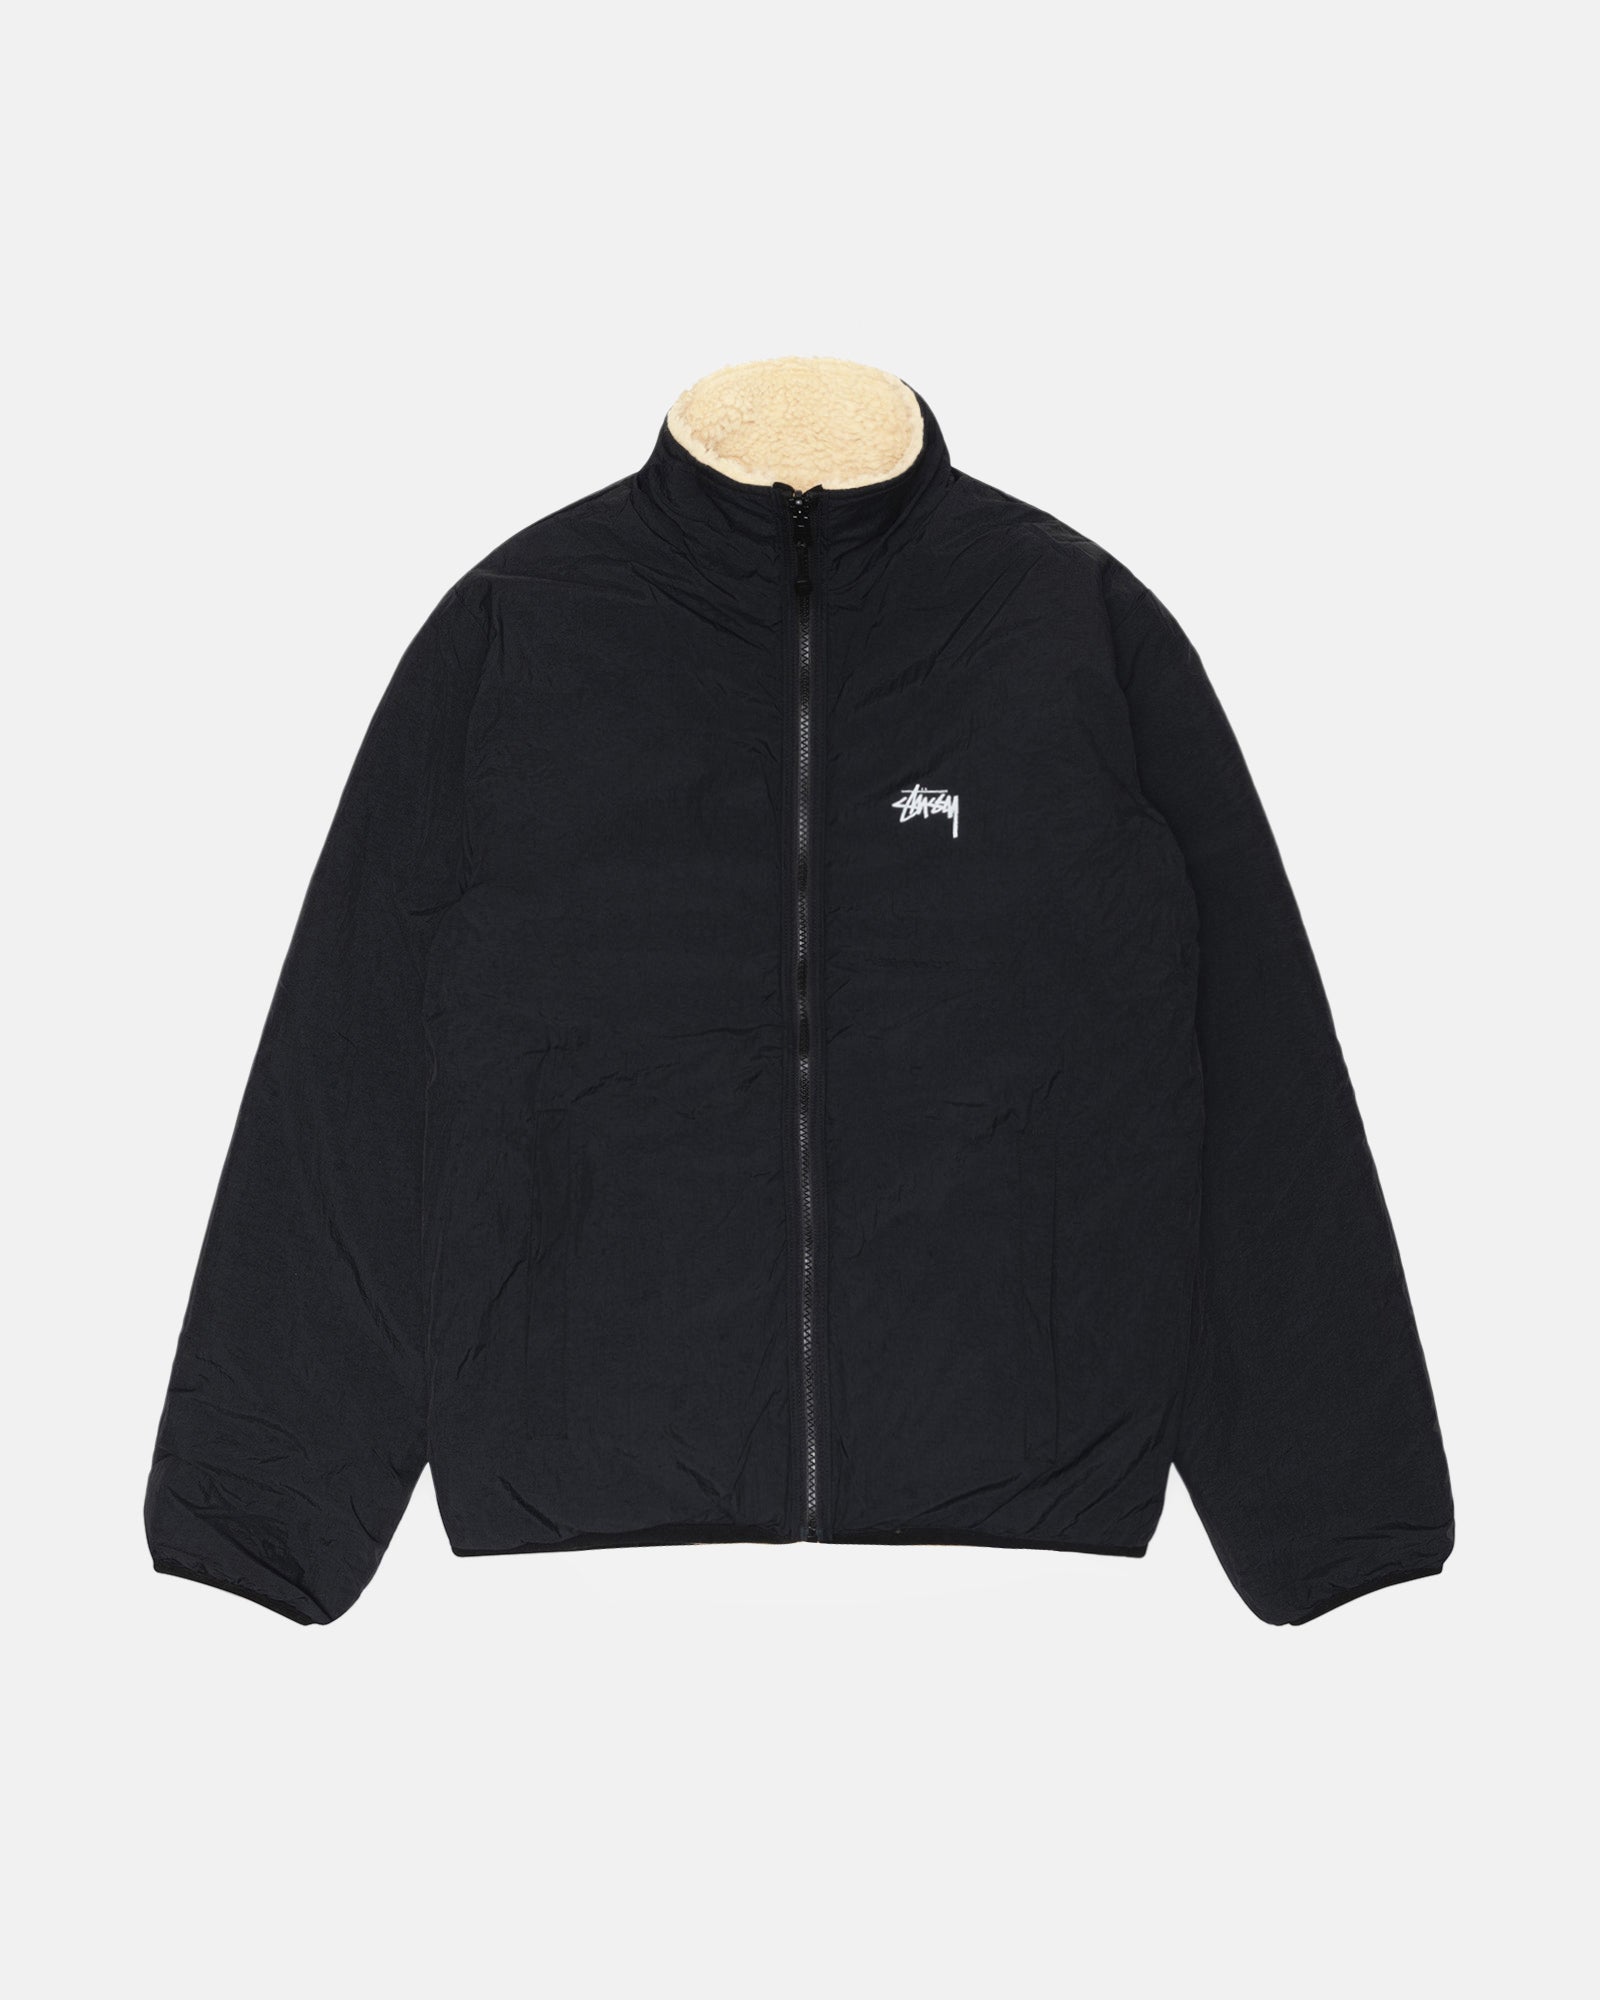 Sherpa Reversible Jacket Beige Outerwear